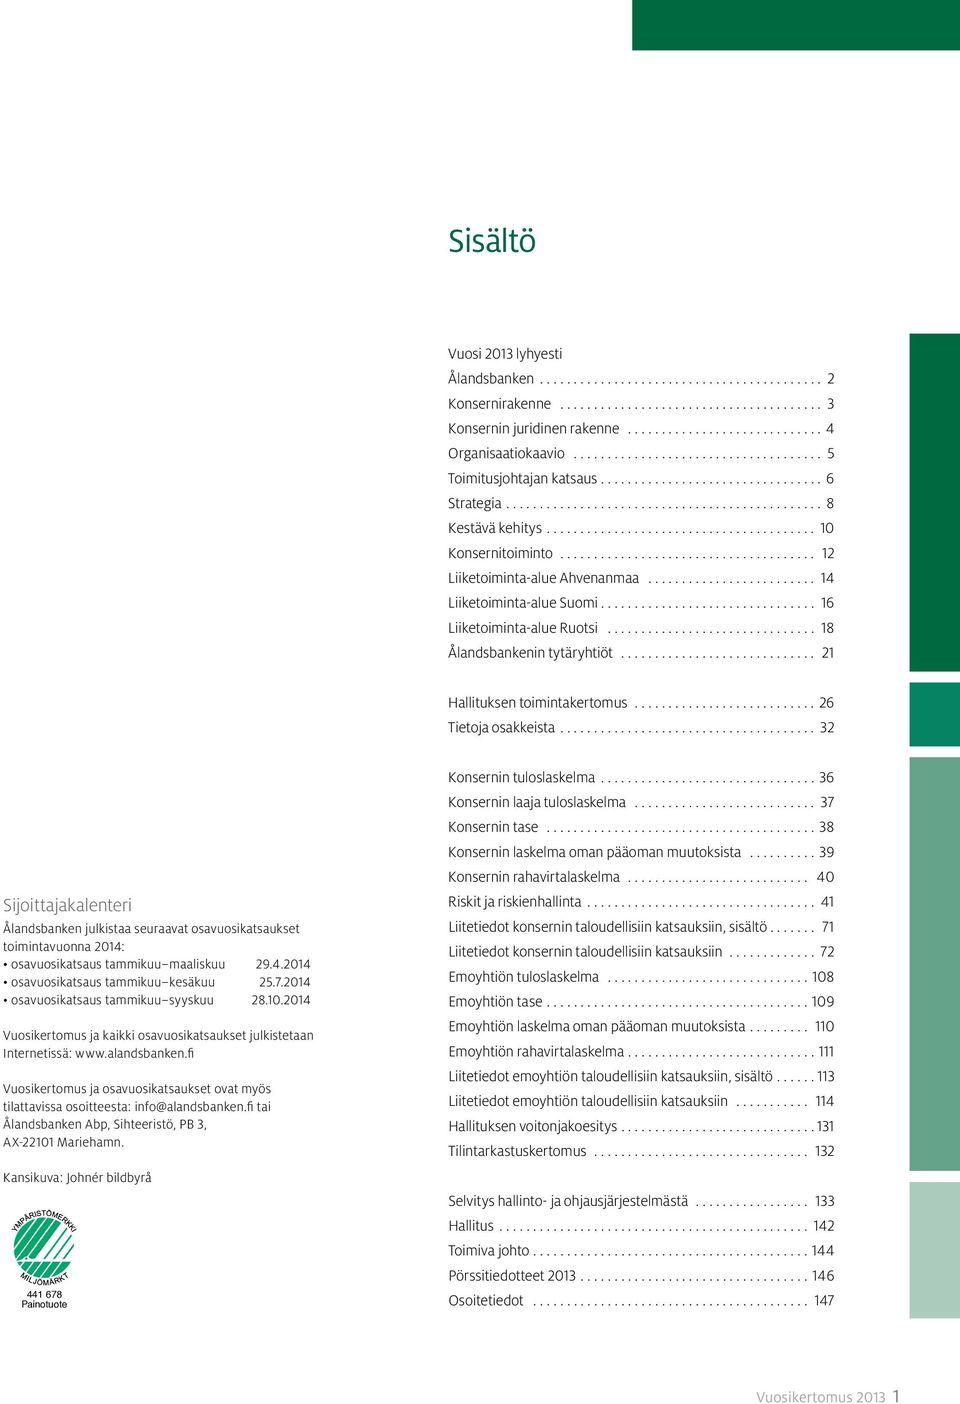 .. 26 Tietoja osakkeista... 32 Sijoittajakalenteri Ålandsbanken julkistaa seuraavat osavuosikatsaukset toimintavuonna 2014: osavuosikatsaus tammikuu maaliskuu 29.4.2014 osavuosikatsaus tammikuu kesäkuu 25.